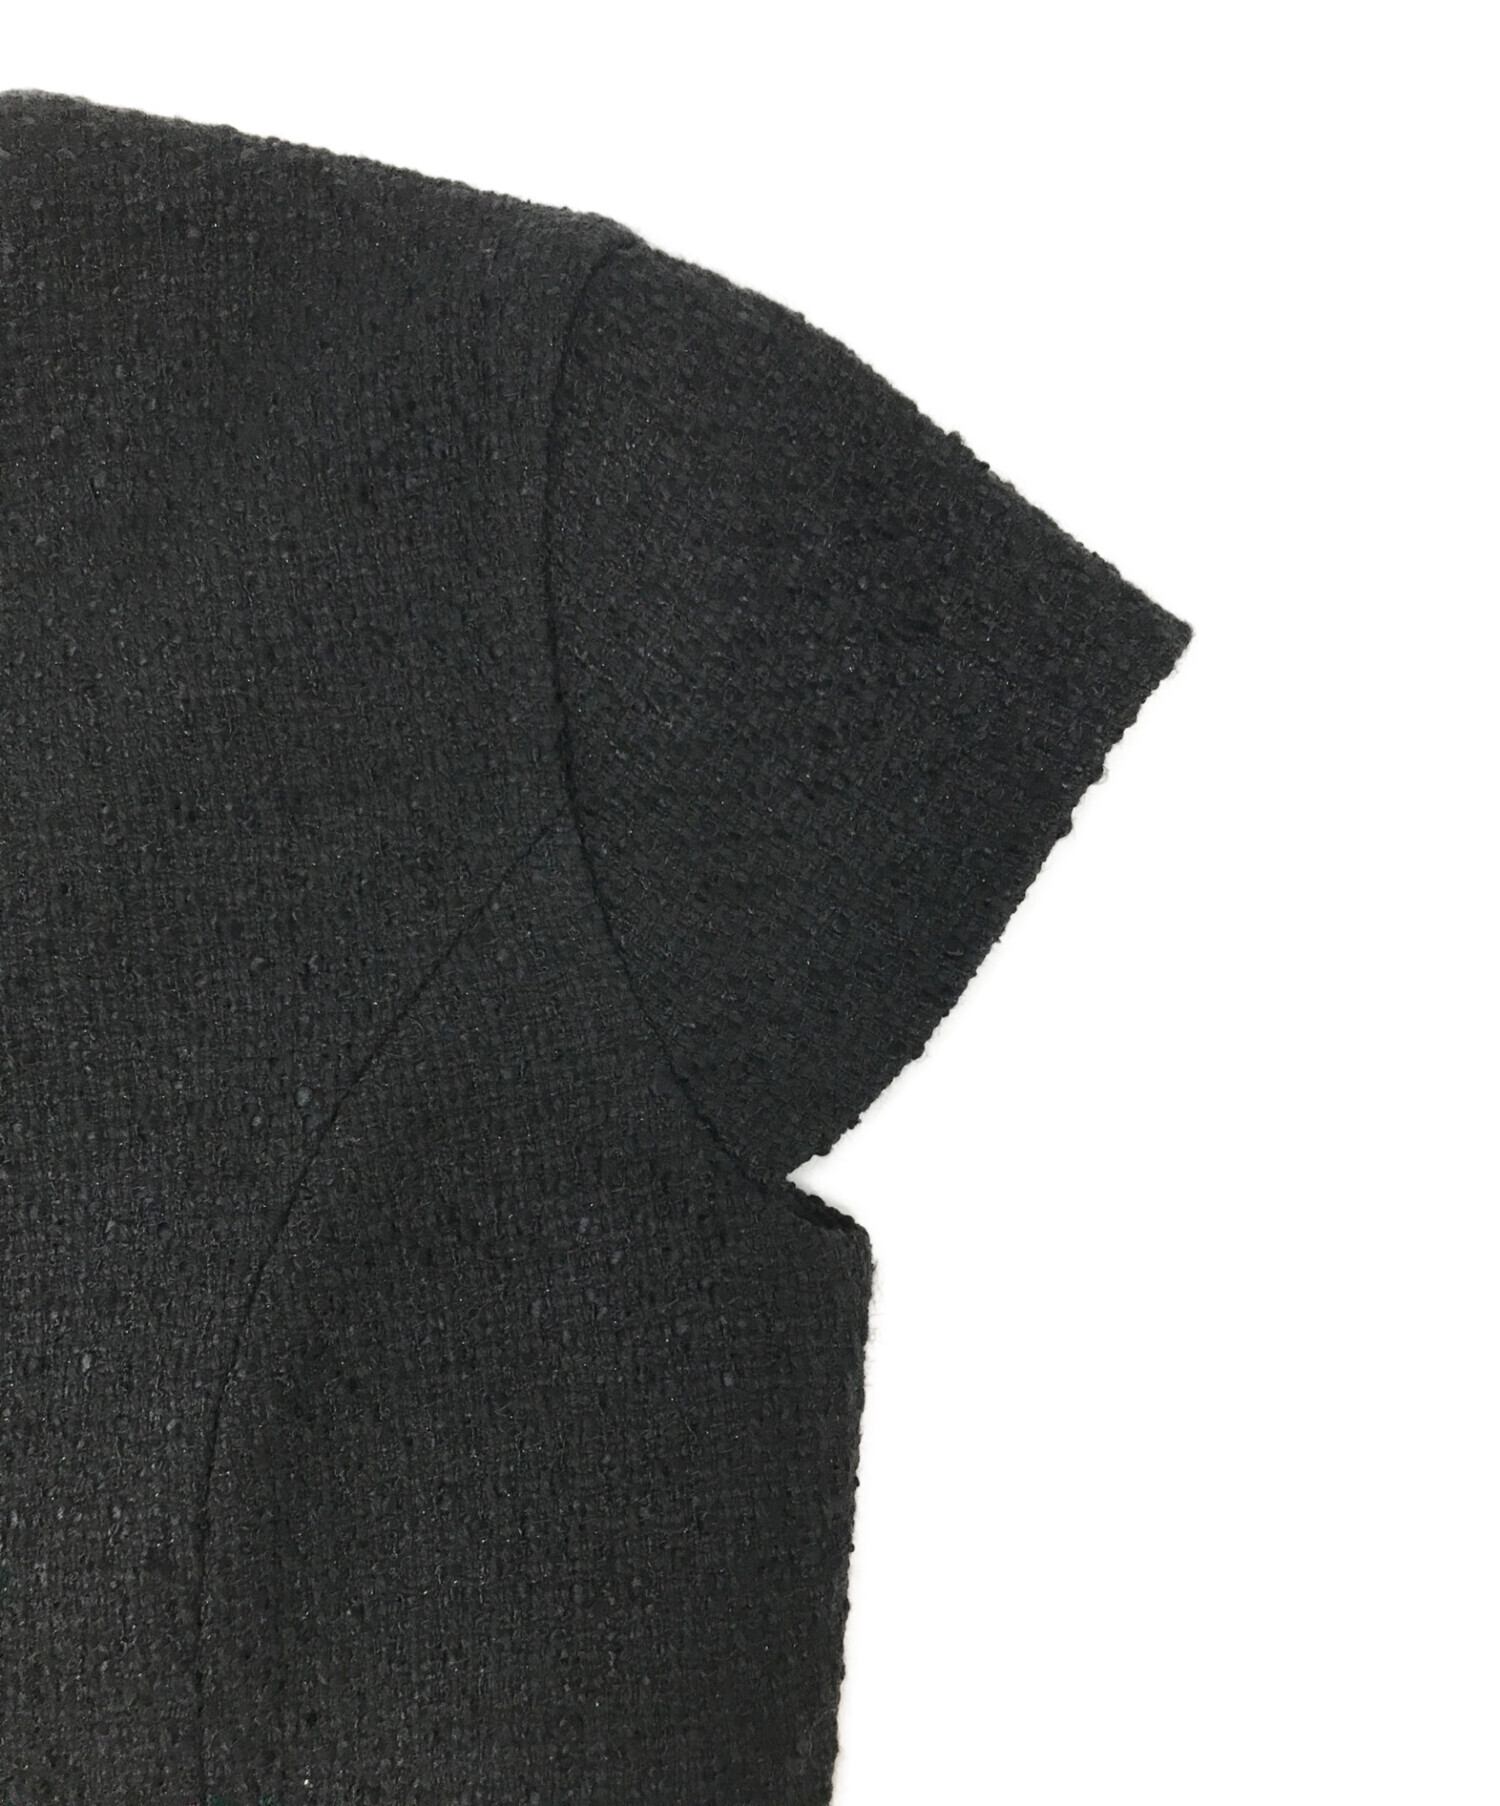 【良品】YOKO CHAN 夏素材バルーンワンピース ブラック 半袖 38